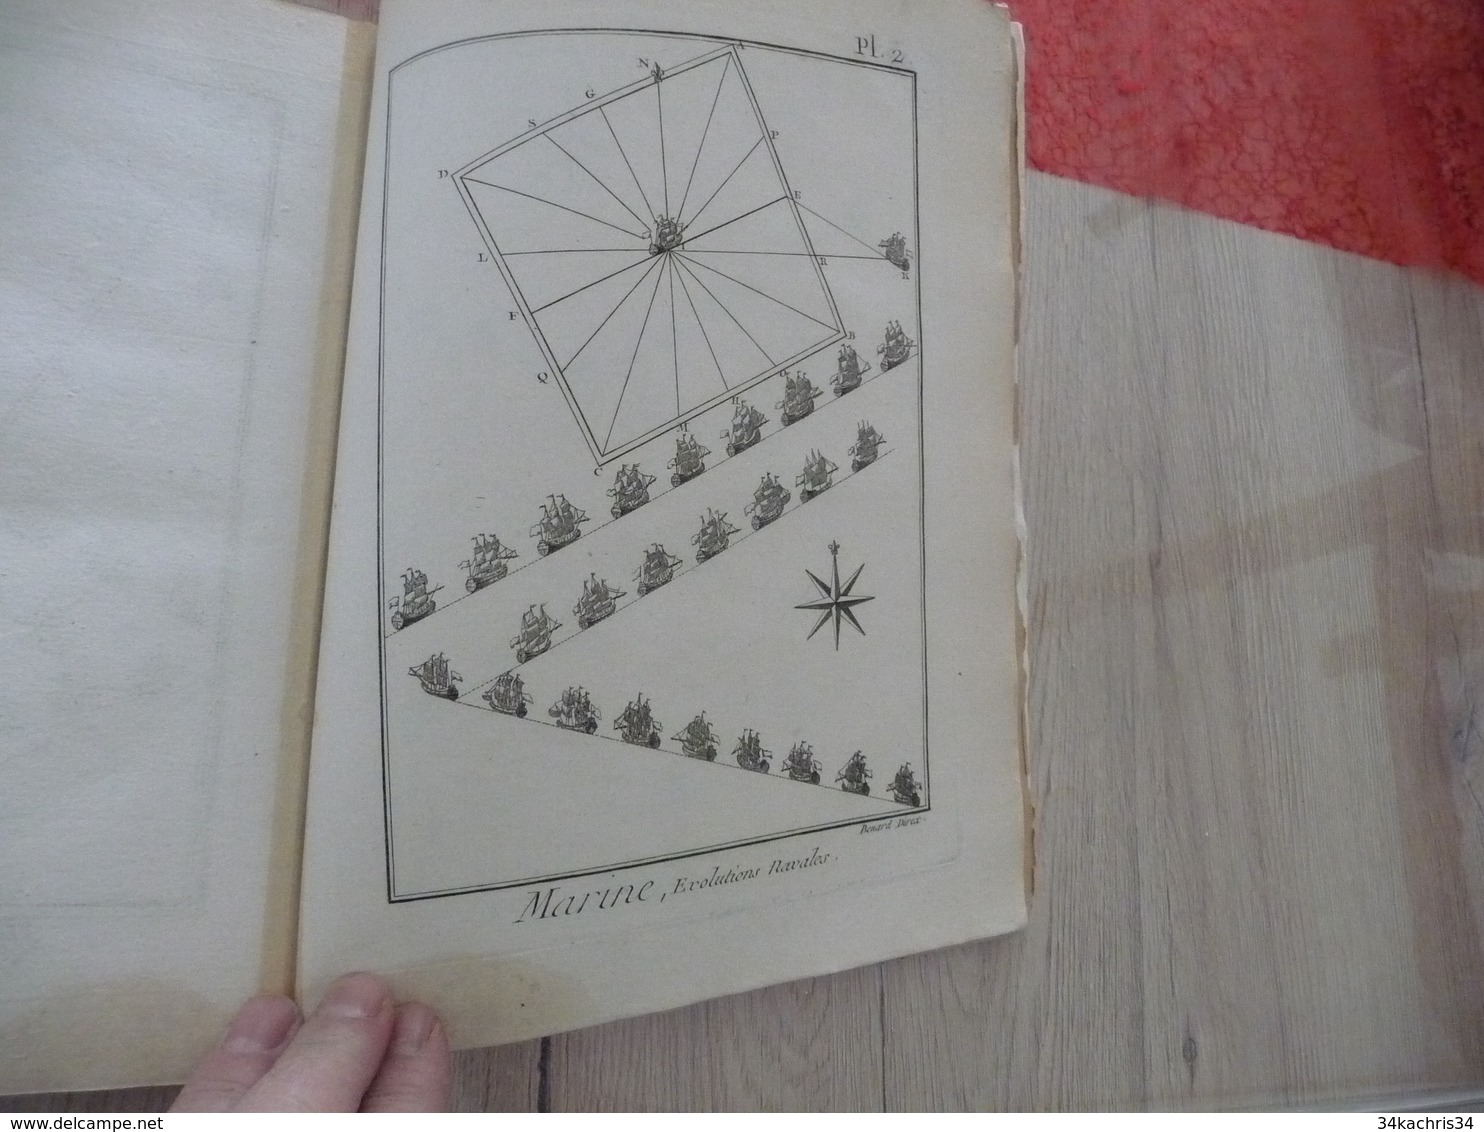 1778 Encyclopédie Diderot d'Alembert Partie Marine Texte + 44 planches dont 24 simples 16 doubles et 4 triples